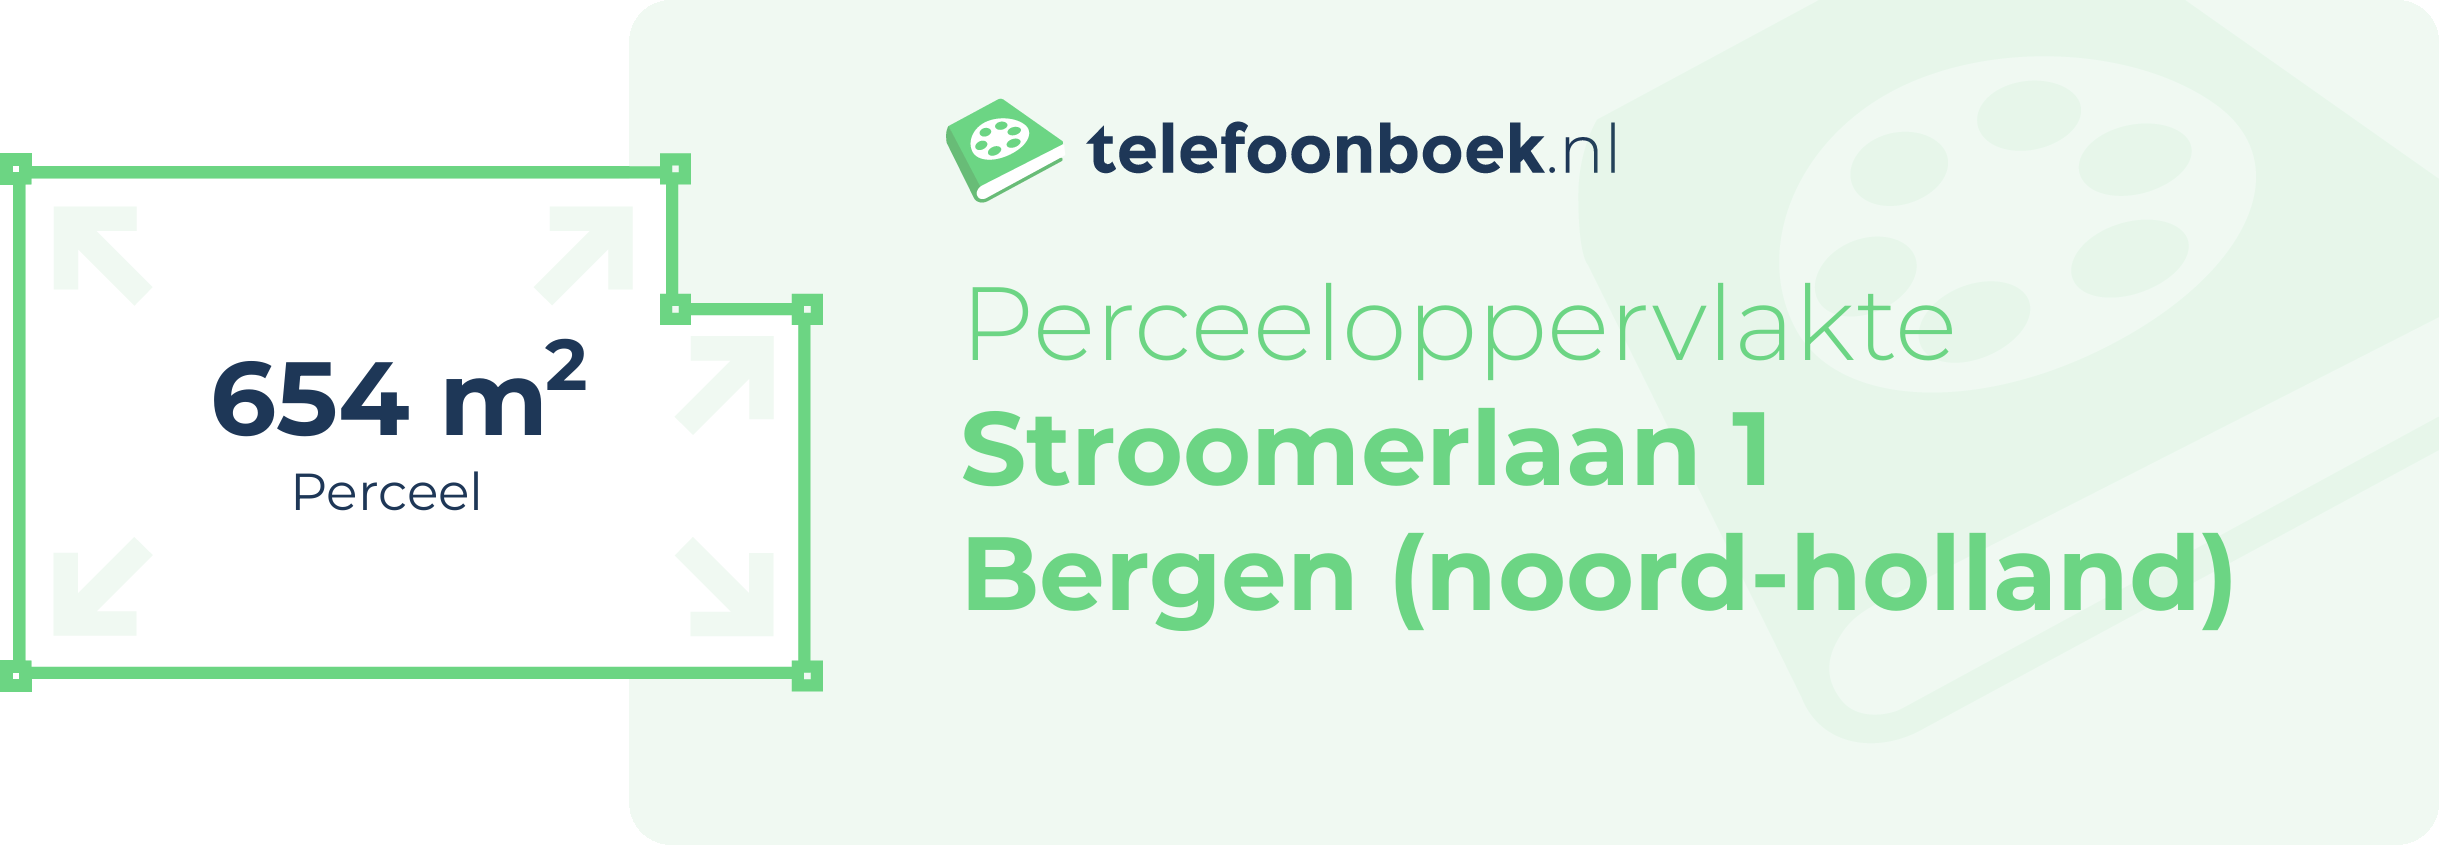 Perceeloppervlakte Stroomerlaan 1 Bergen (Noord-Holland)